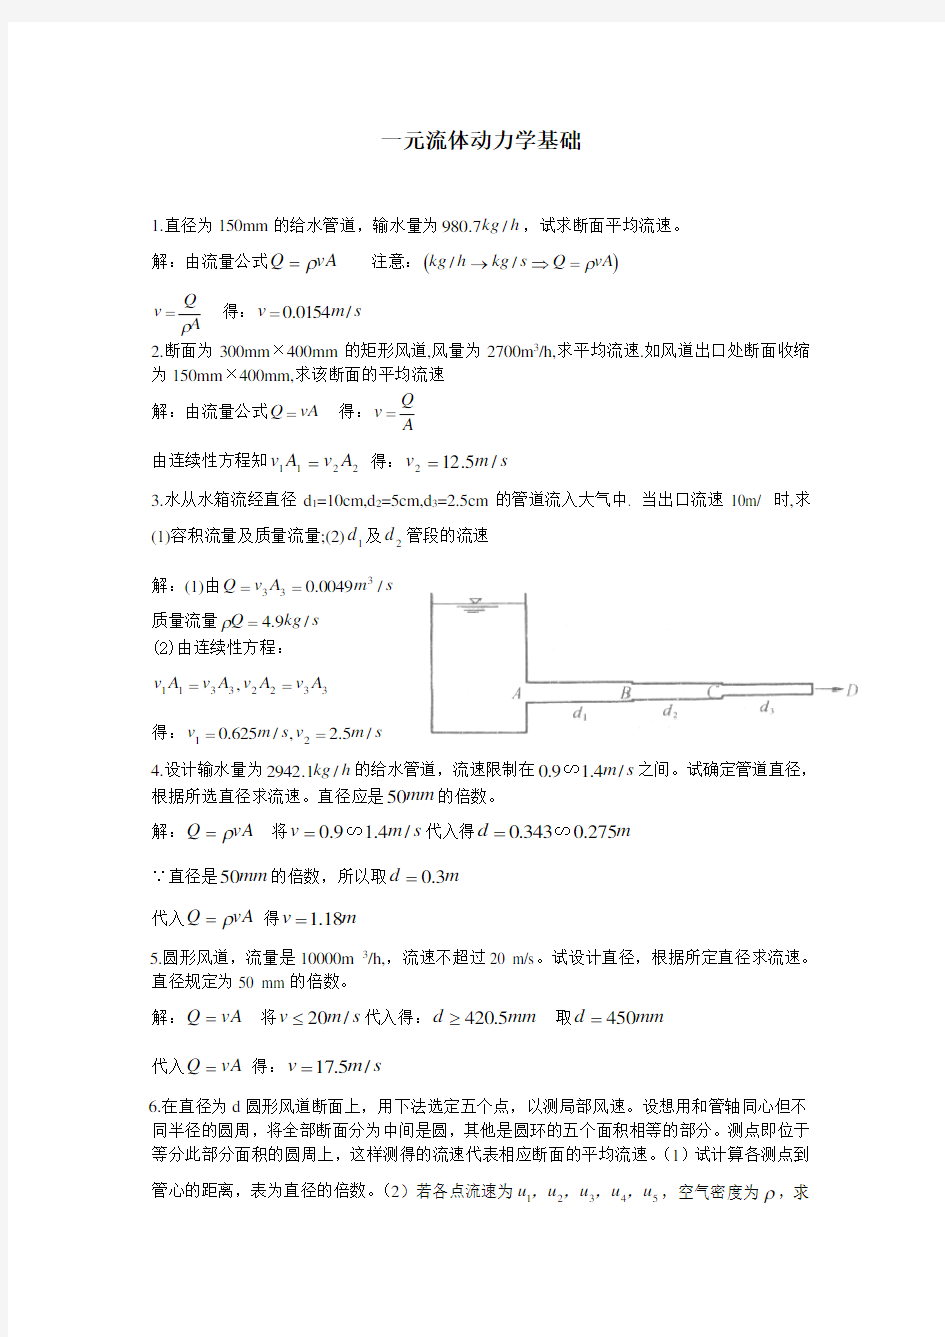 (完整版)重庆大学流体力学课堂习题